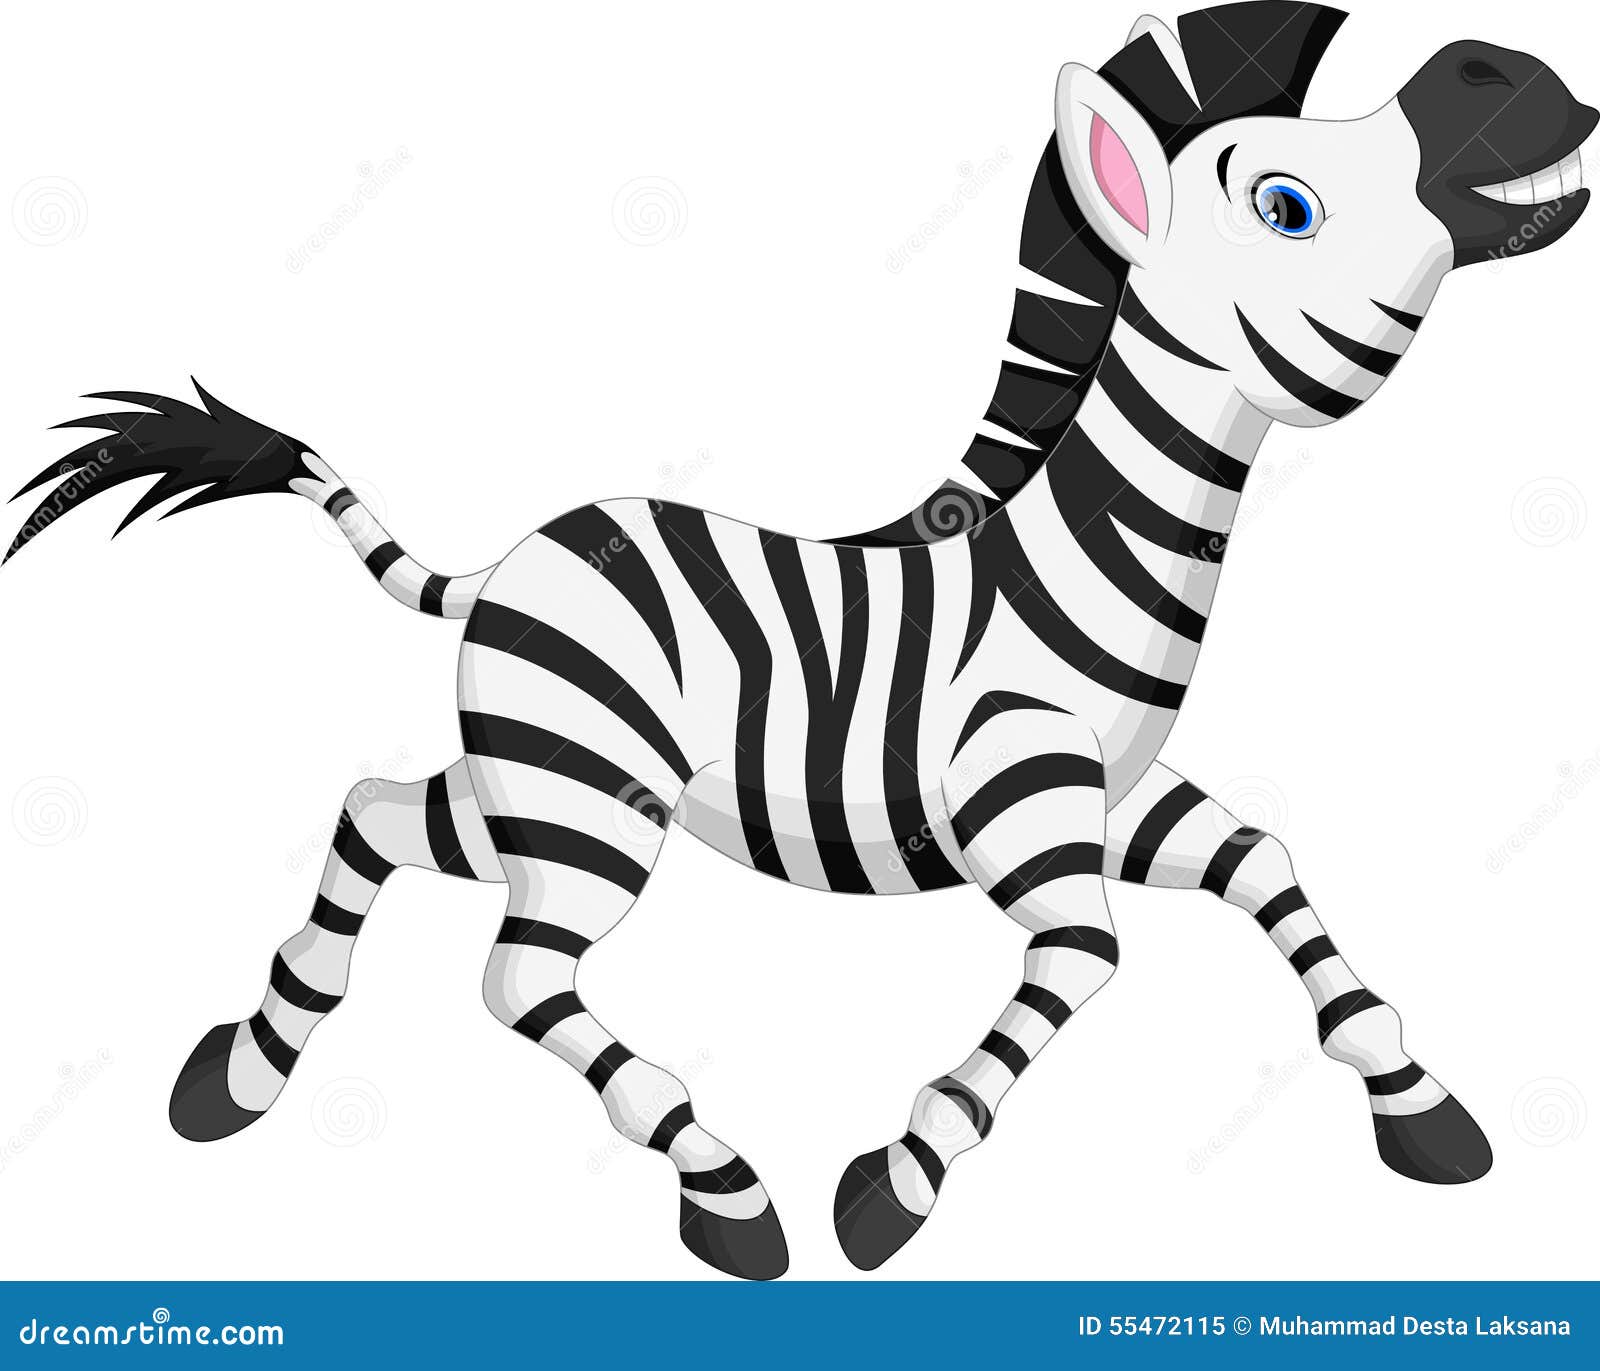 cute zebra clipart free - photo #32